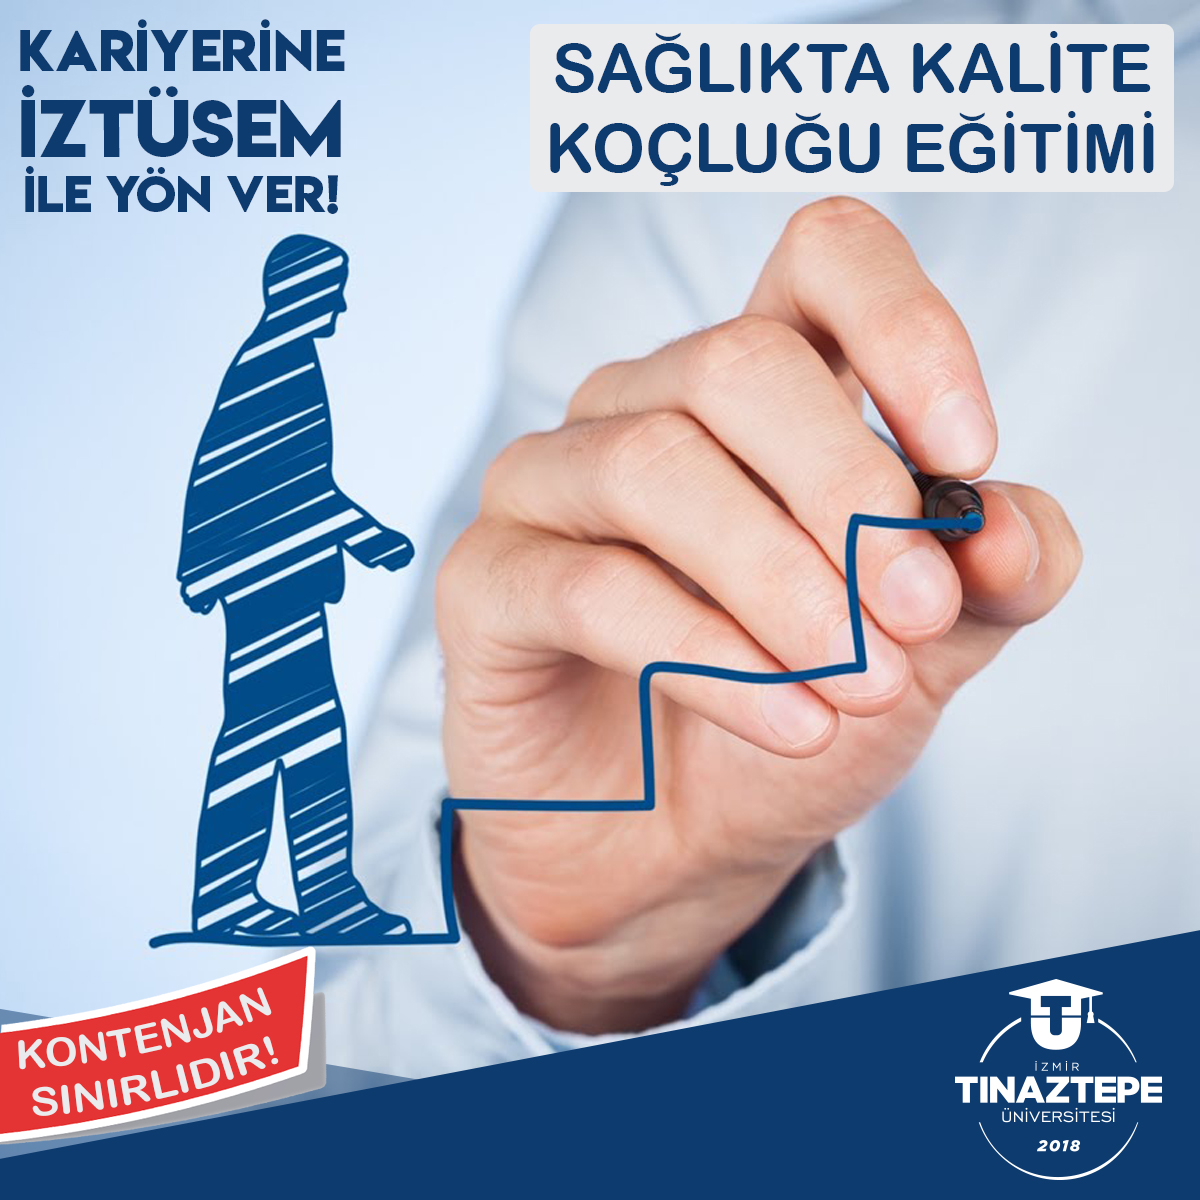 İzmir Tınaztepe Üniversitesi<br>Sağlıkta Kalite Koçluğu Eğitimi